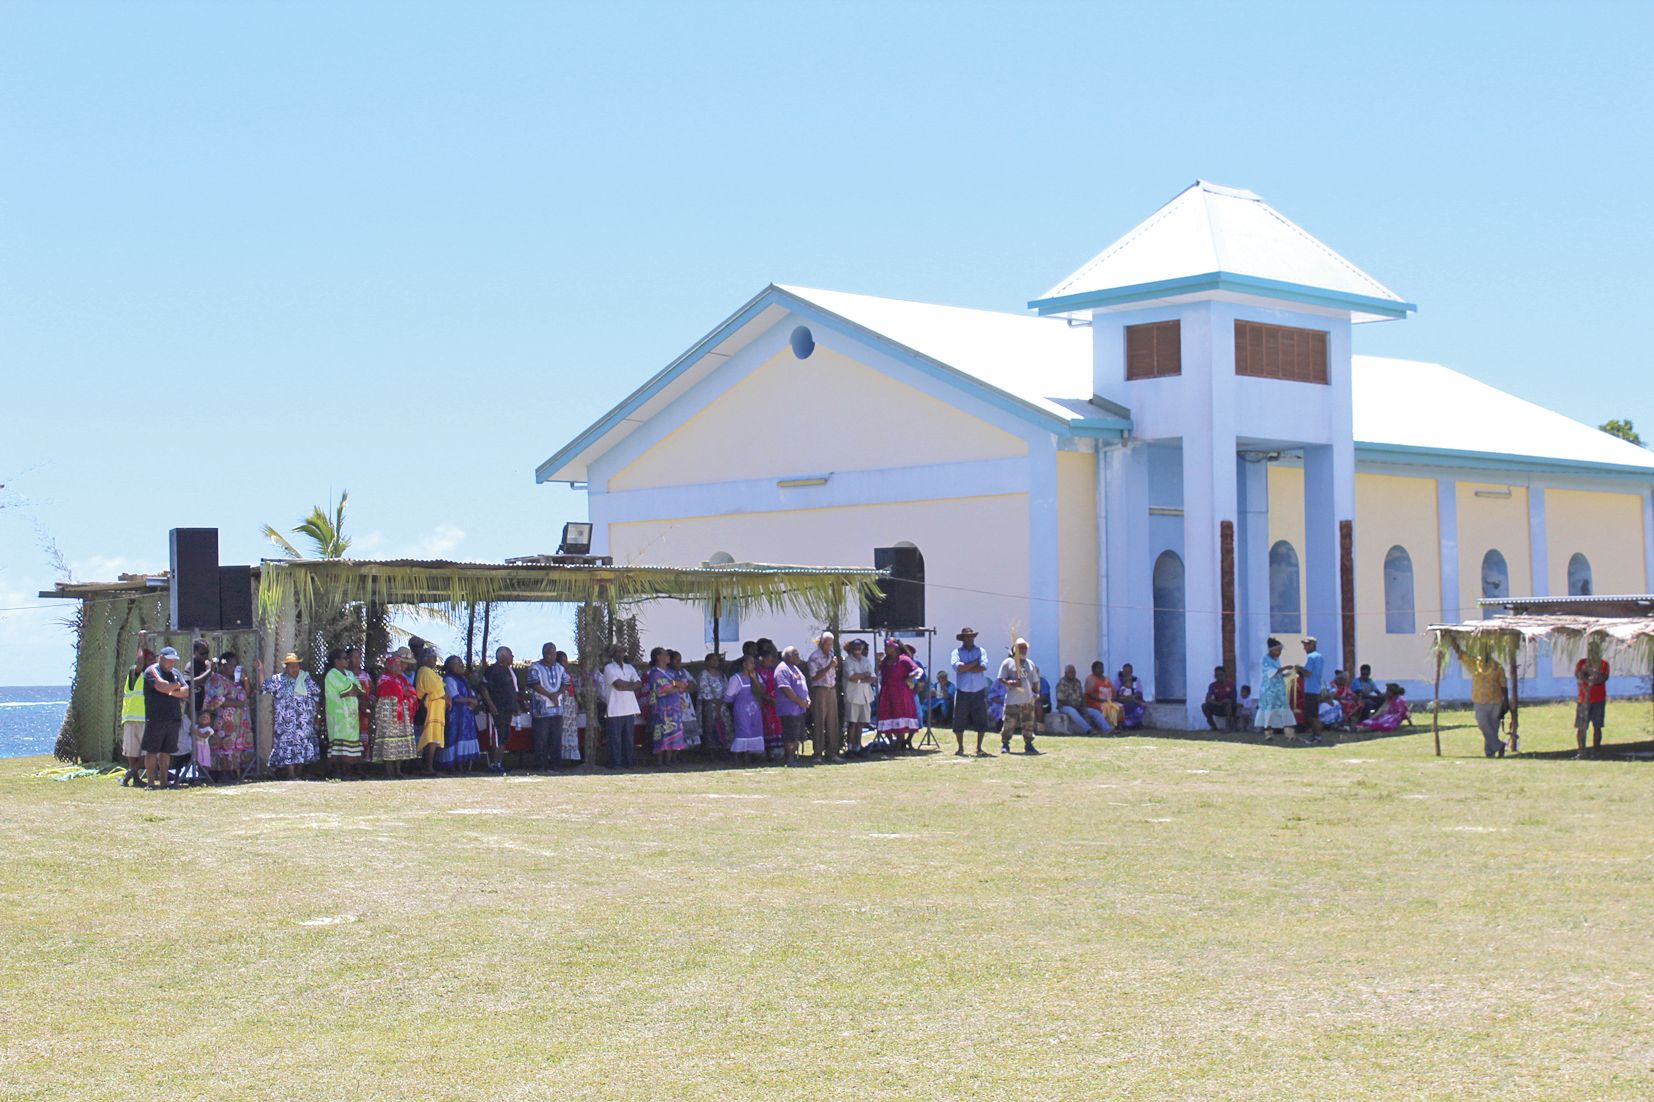 La paroisse de Qanono et le consistoire de Gaïtcha ont accueilli plus de quatre cents personnes pendant ce week-end devant son presbytère à Gaitheu. Trois lieux historiques de l’EPKNC (Église protestante de Kanaky Nouvelle-Calédonie) ont été sollicités pour célébrer ce 500e anniversaire de la Réforme : Ahmelewedr à Mou pour l’arrivée de l’Evangile à Lifou, Qanono, qui s’appelait autrefois Gaitheu et où est enterré le missionnaire Fao qui est arrivé avec l’Evangile, et Béthanie, l’école des pasteurs.